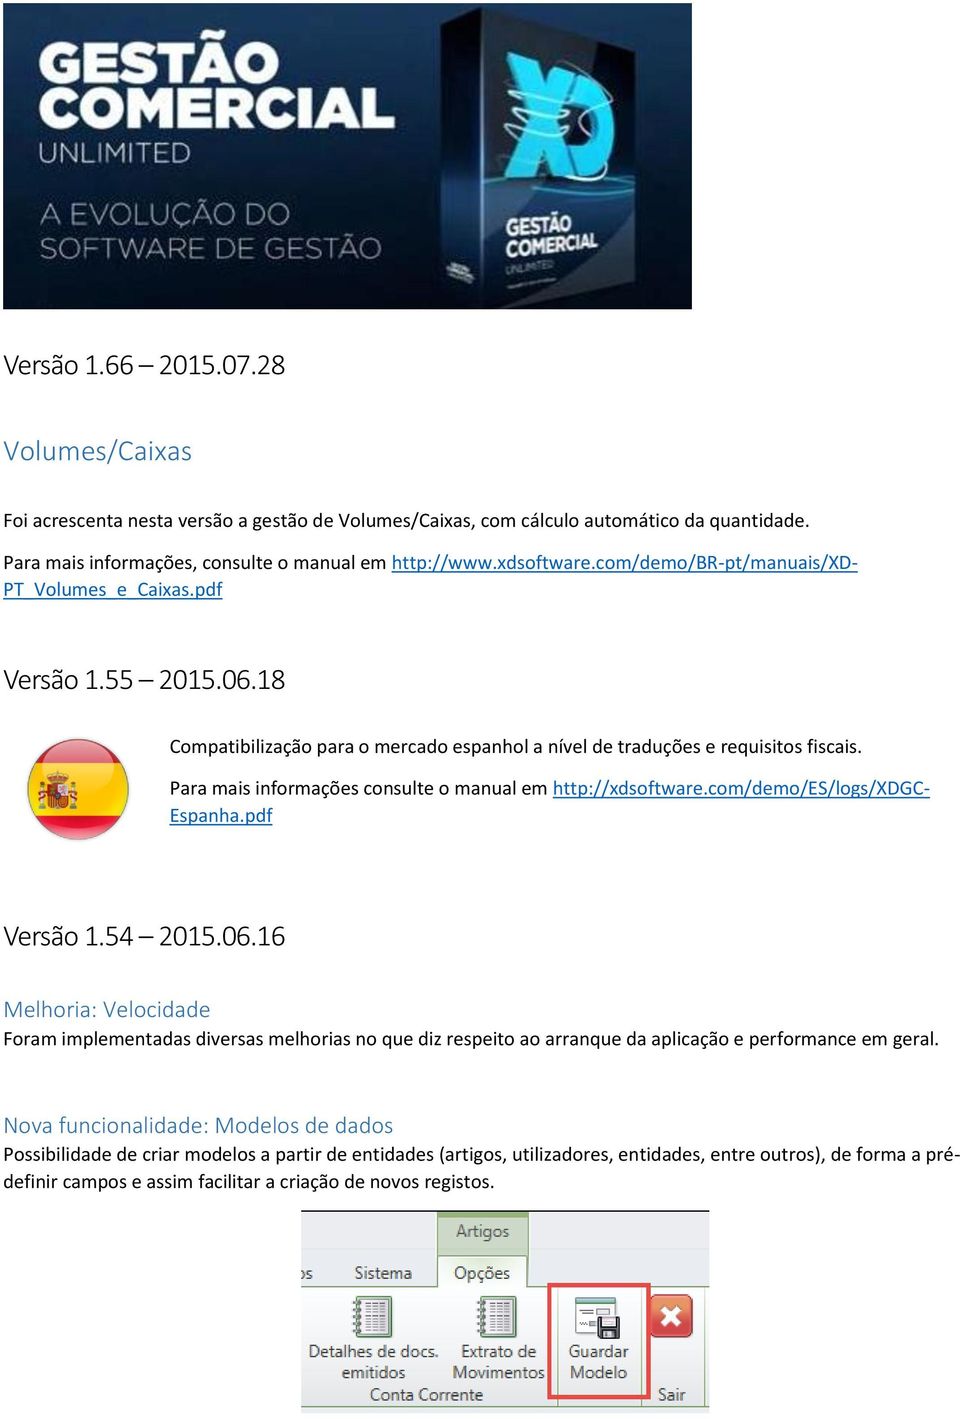 Para mais informações consulte o manual em http://xdsoftware.com/demo/es/logs/xdgc- Espanha.pdf Versão 1.54 2015.06.